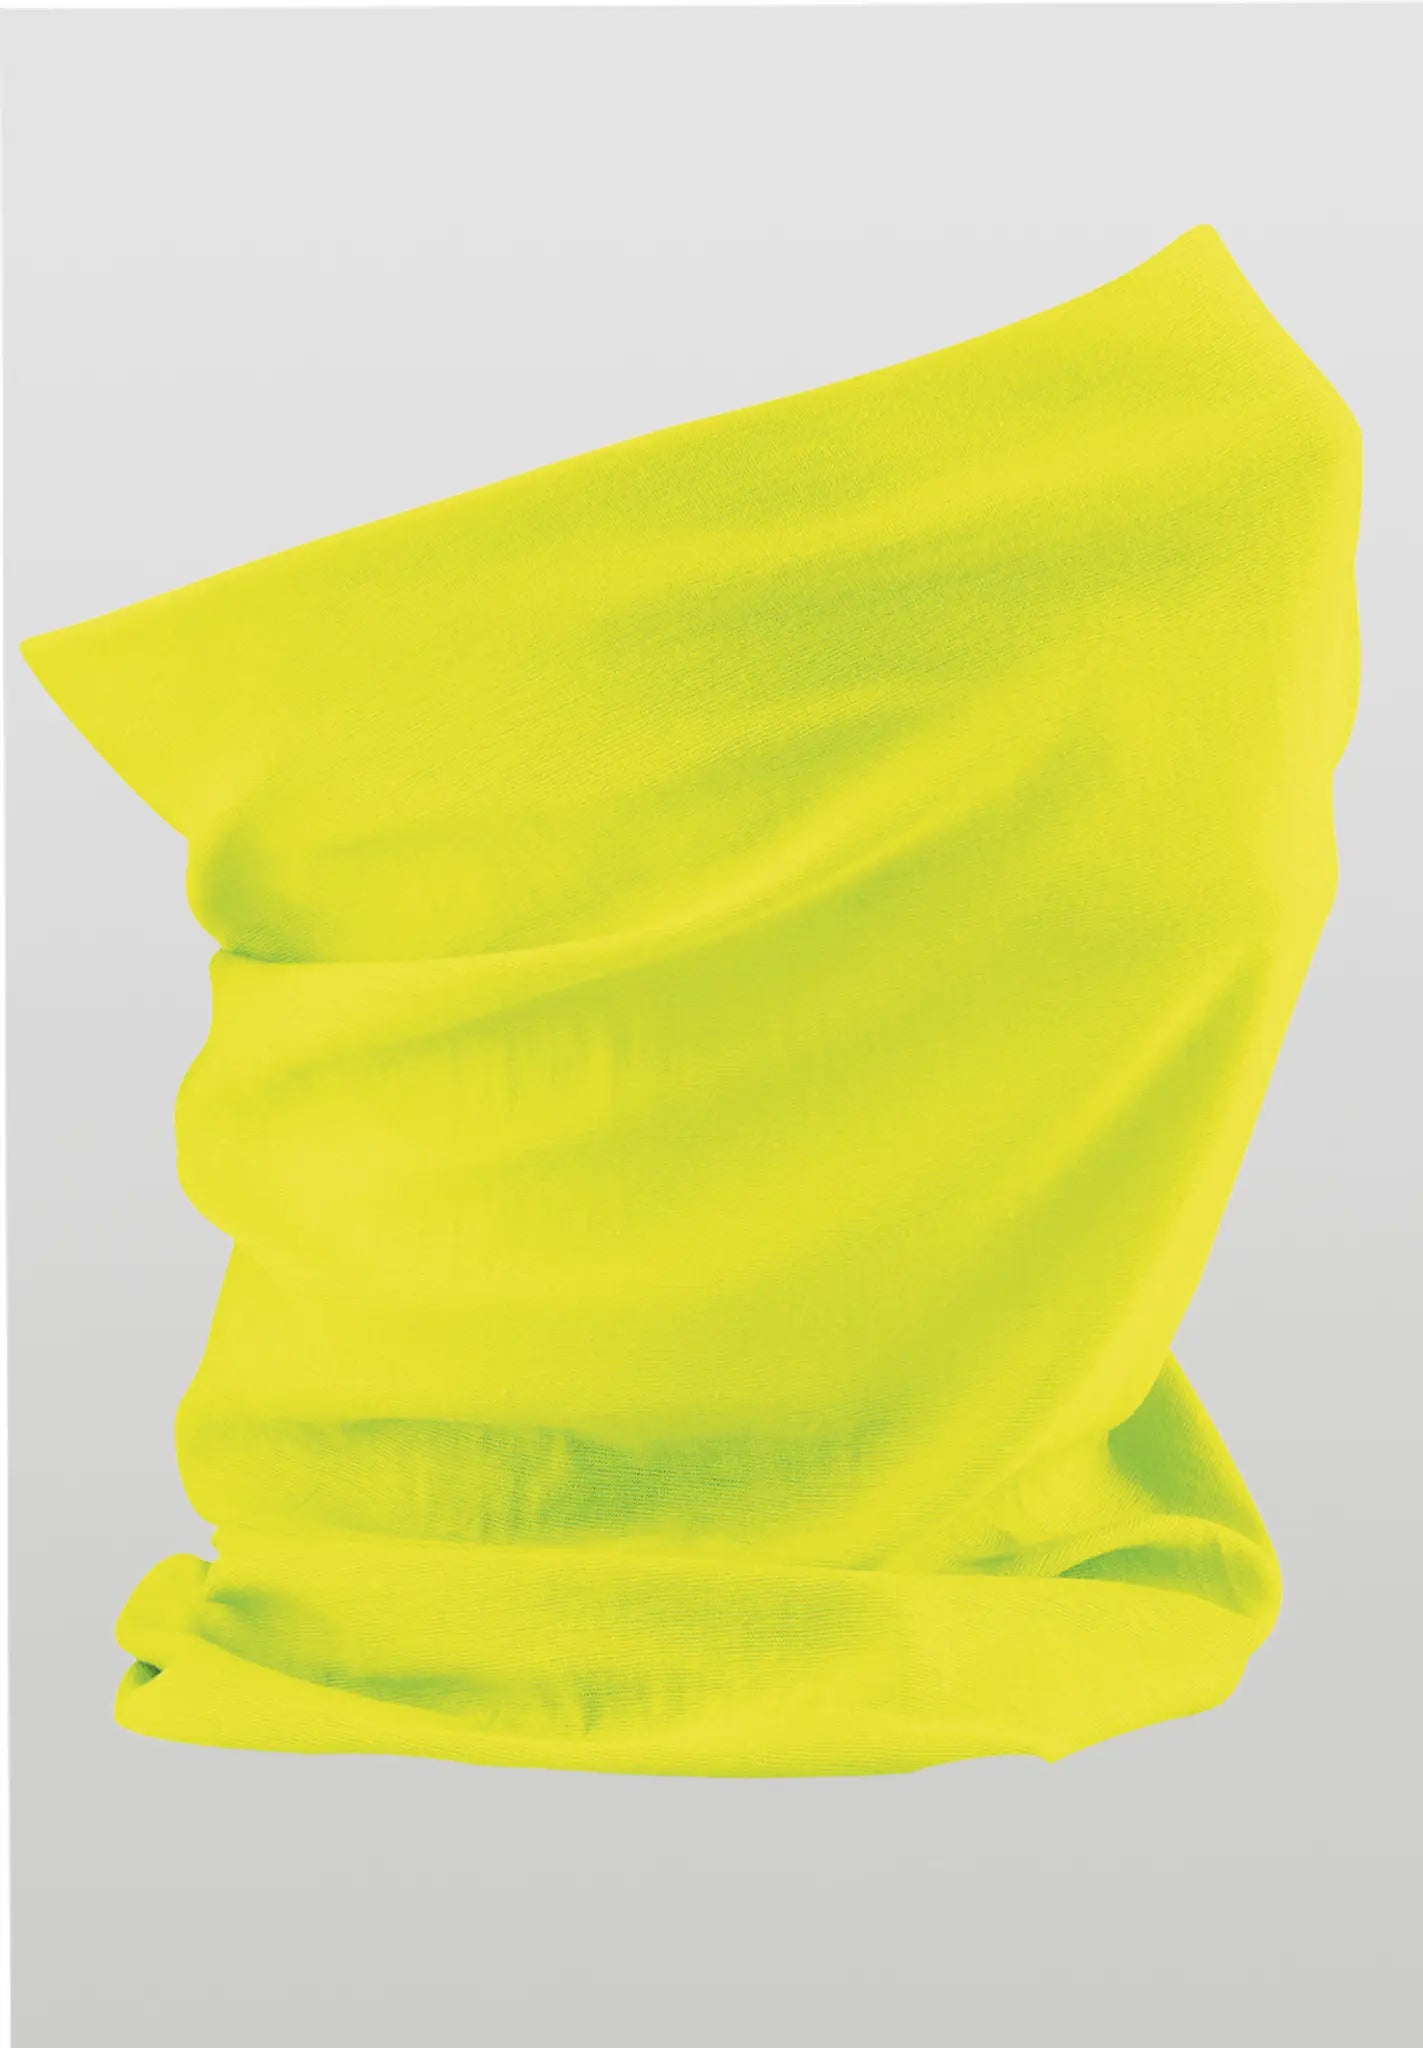 Fluorescent Yellow multi use headwear, running headband